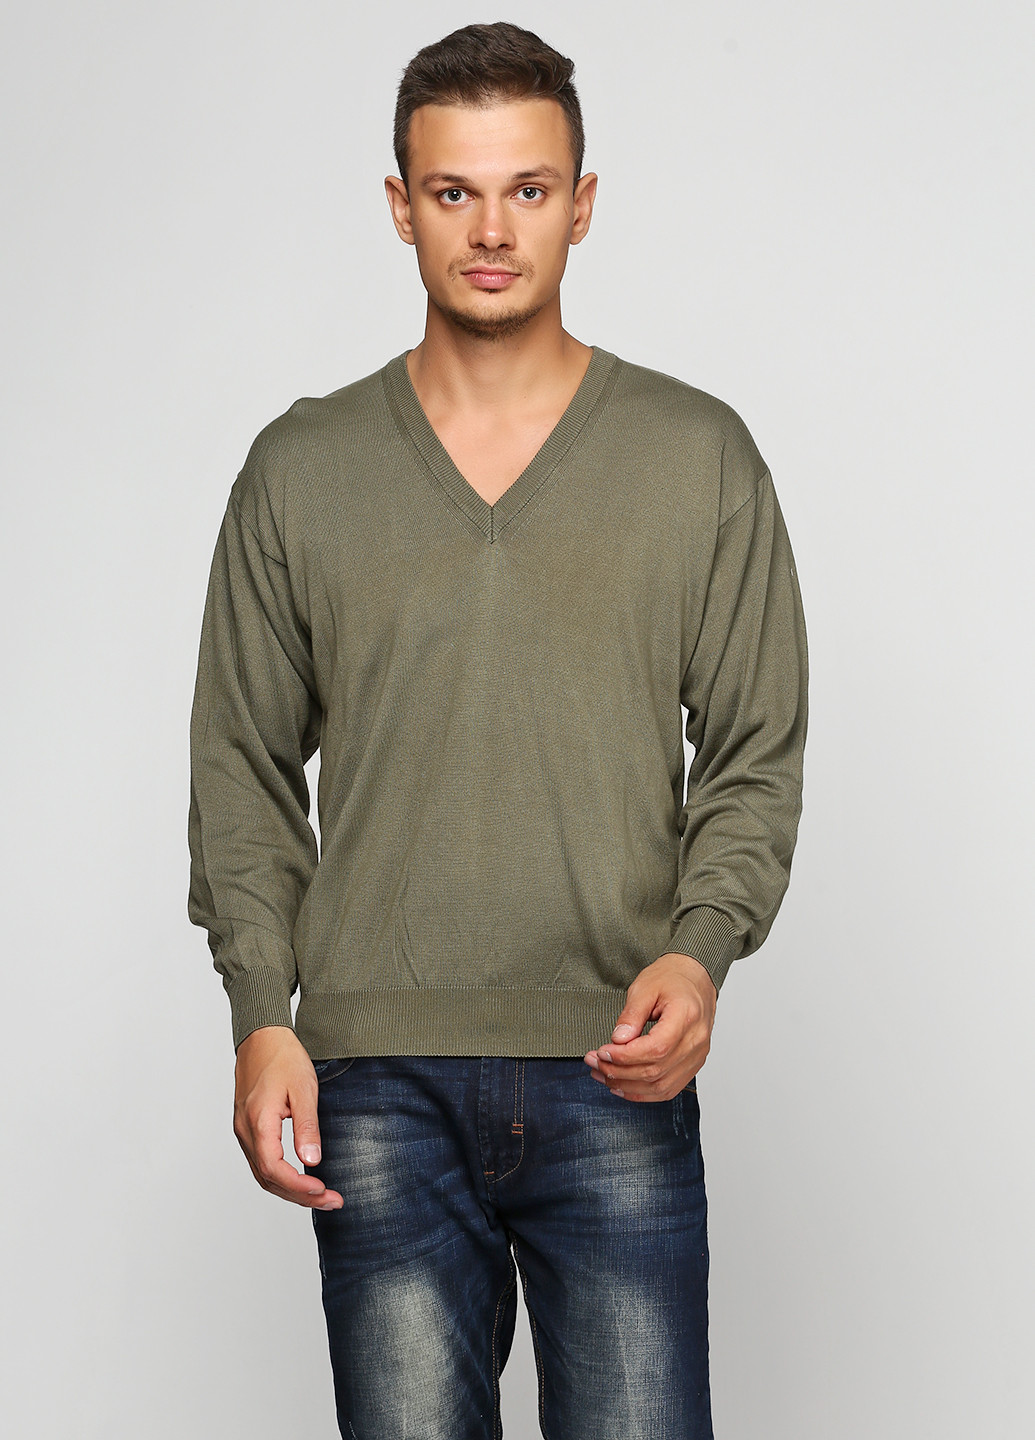 Оливковый (хаки) демисезонный пуловер пуловер Barbieri